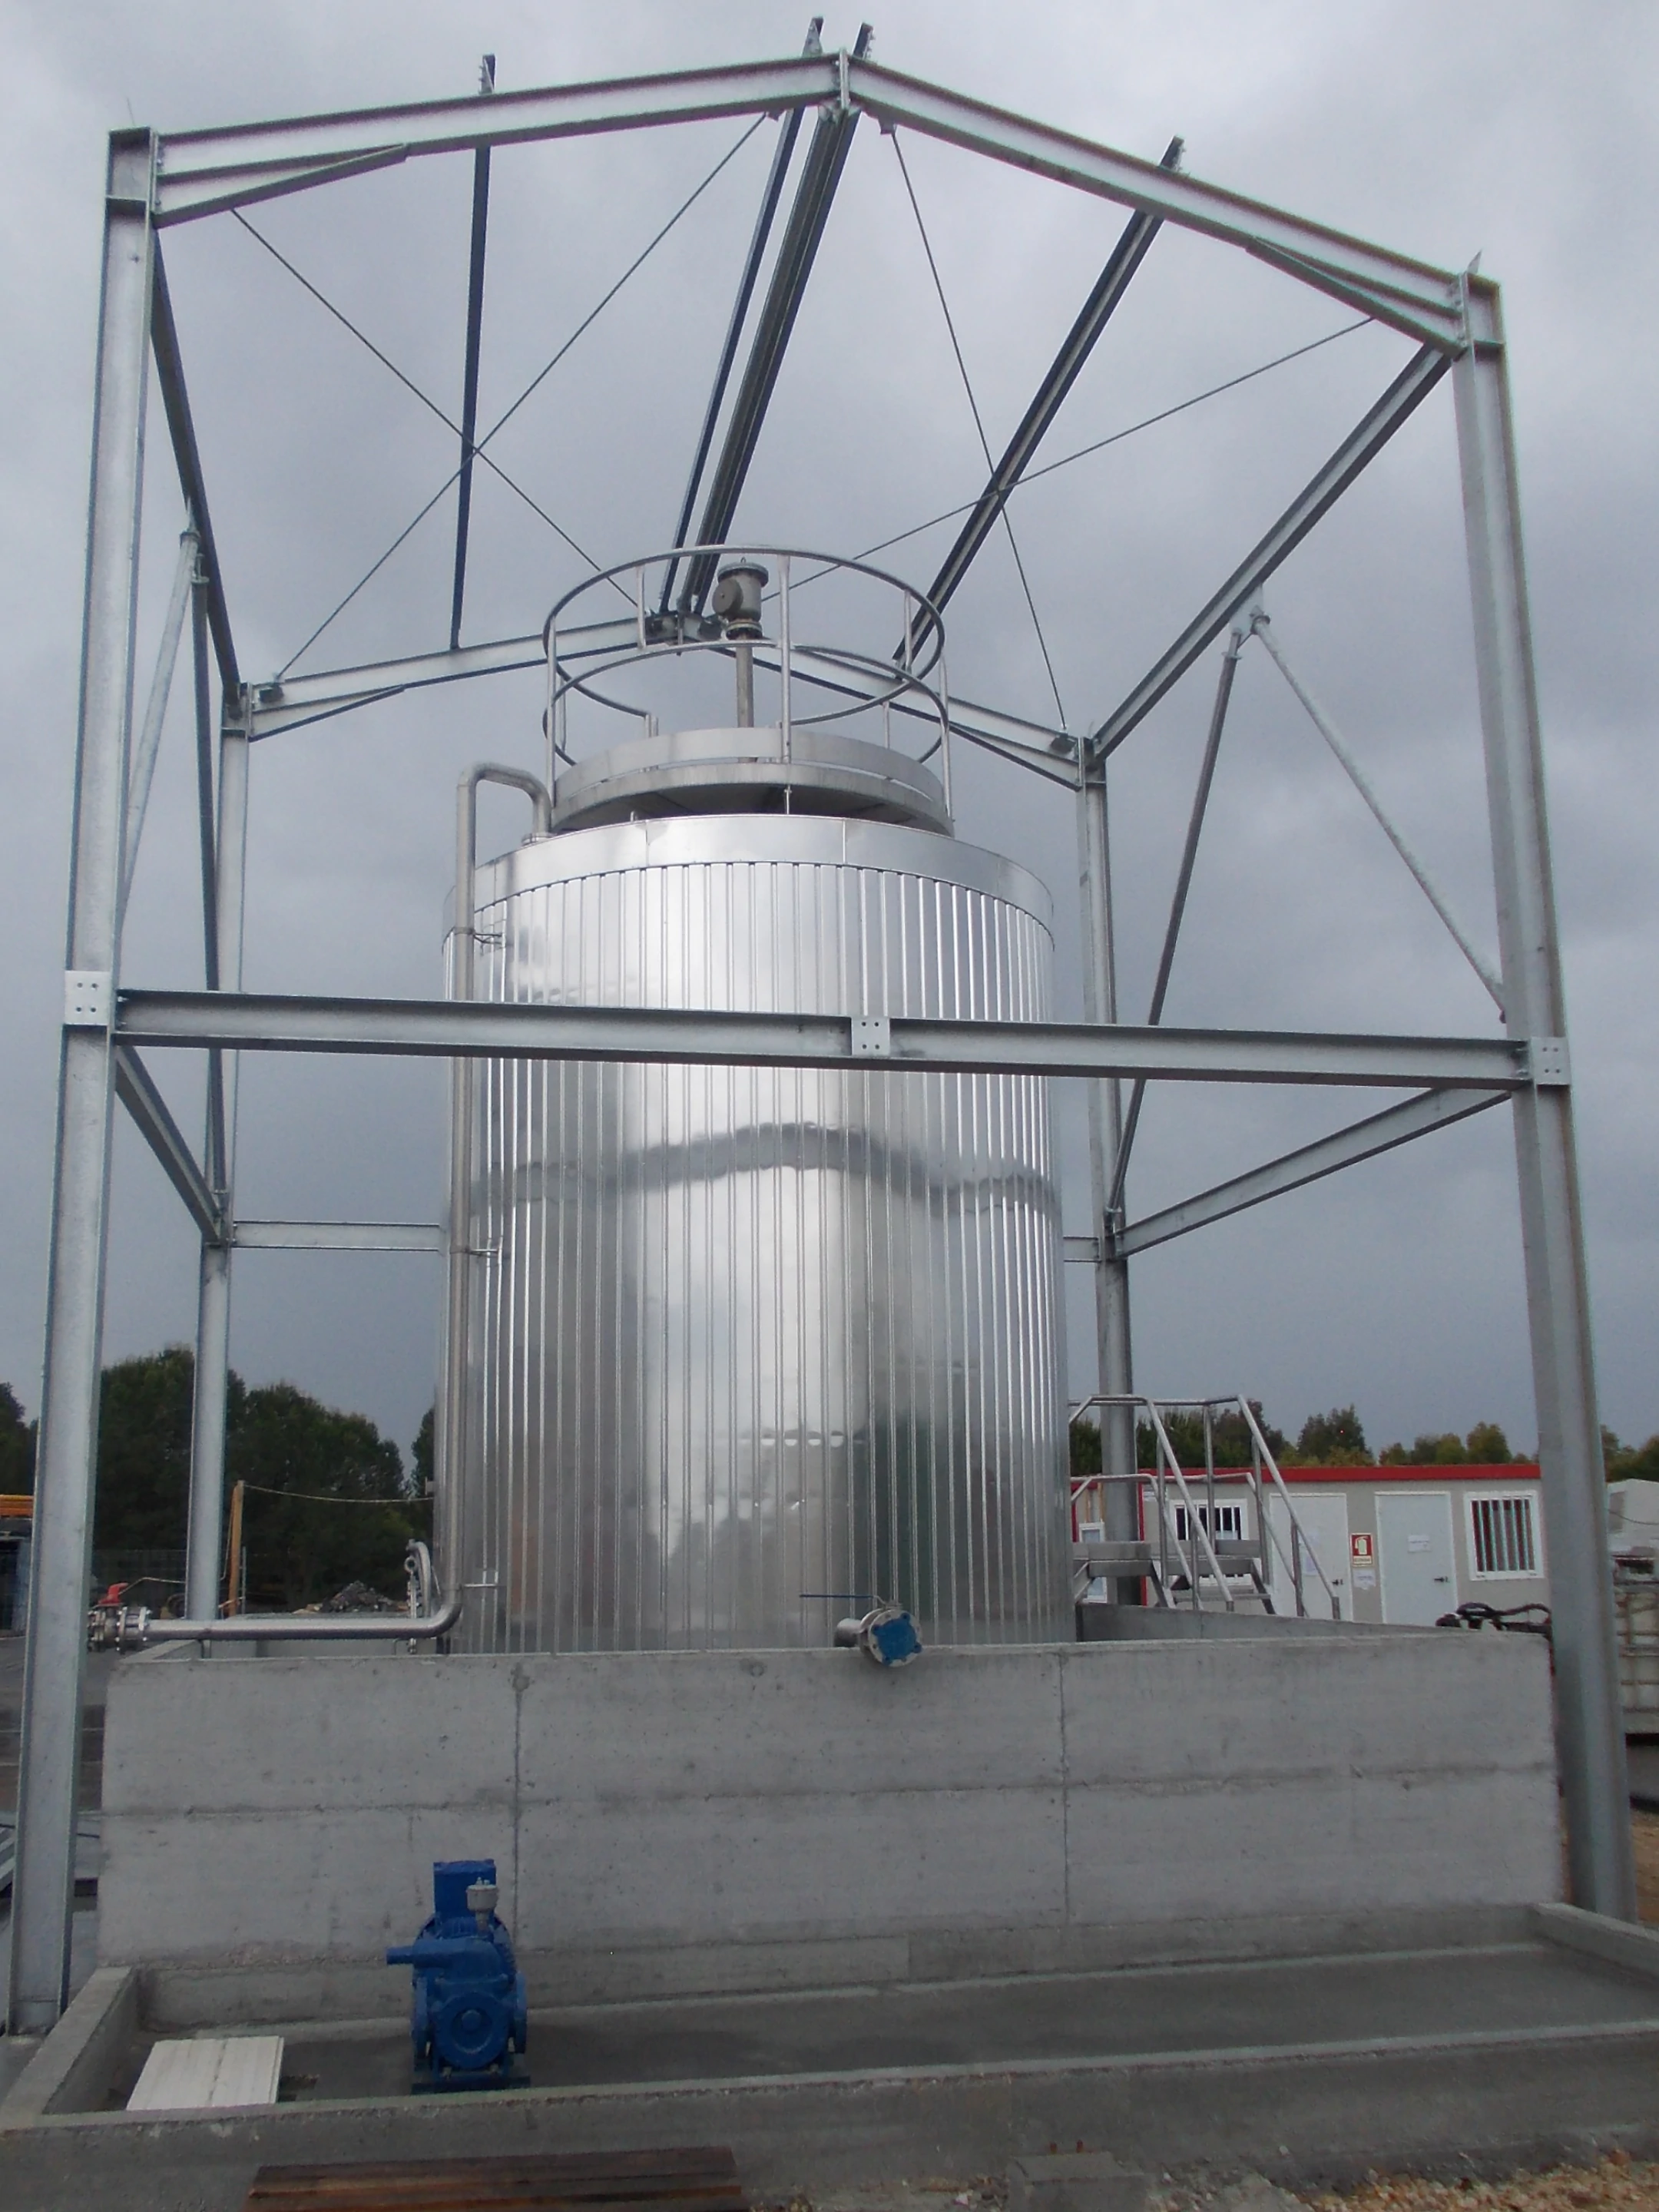 BTL Storage tank in stainless steel - Chemical Industry (mining)